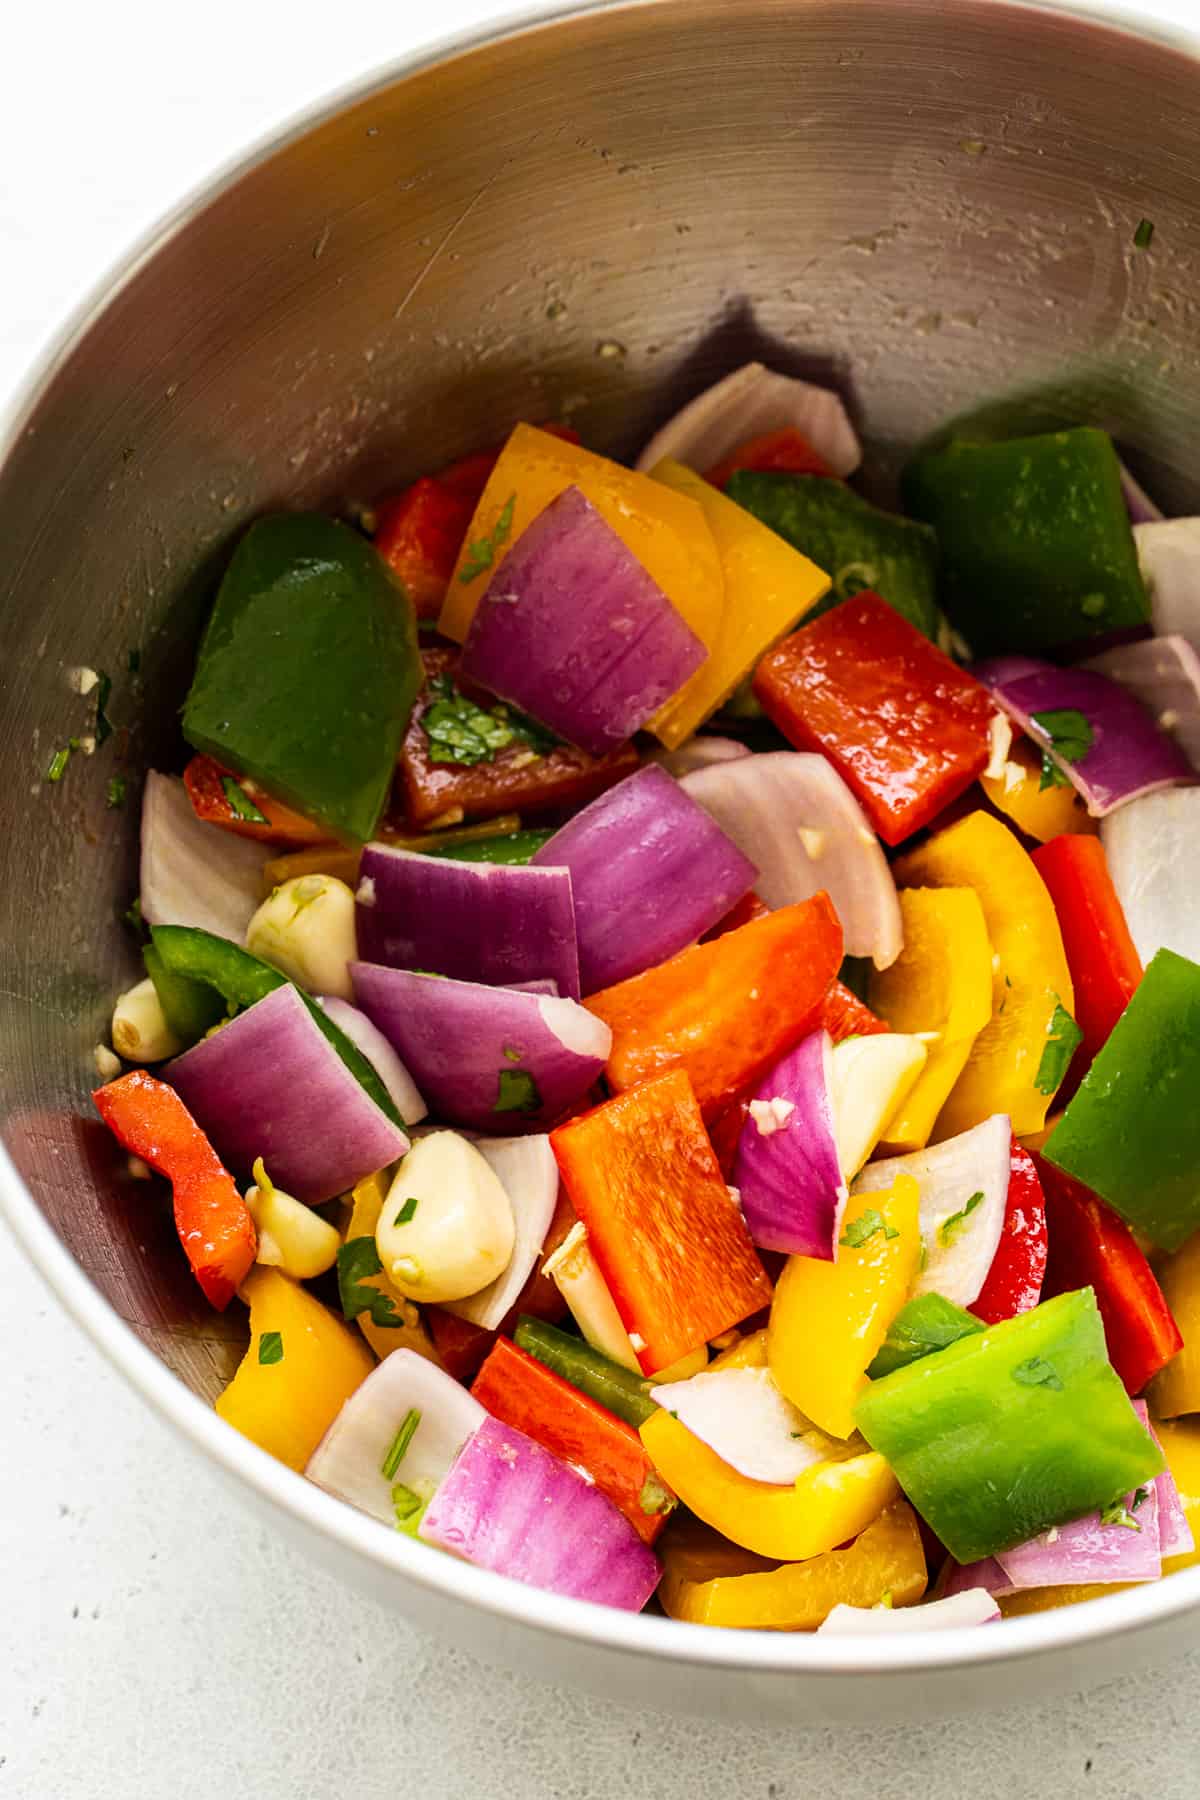 سبزیجات رنگین کم، در حال مرین ، در یک کاسه.